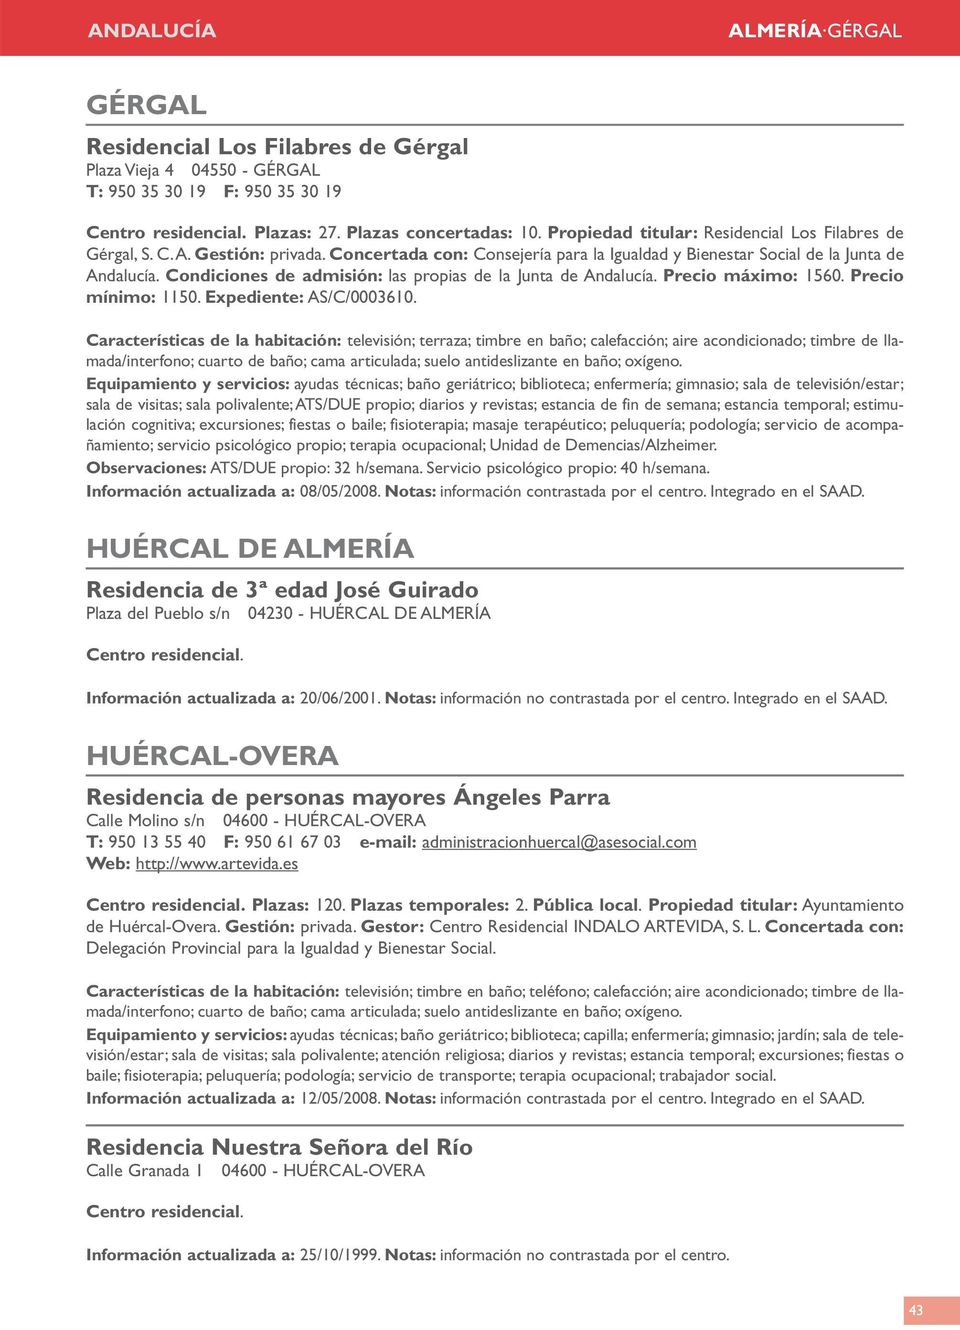 Condiciones de admisión: las propias de la Junta de Andalucía. Precio máximo: 1560. Precio mínimo: 1150. Expediente: AS/C/0003610.